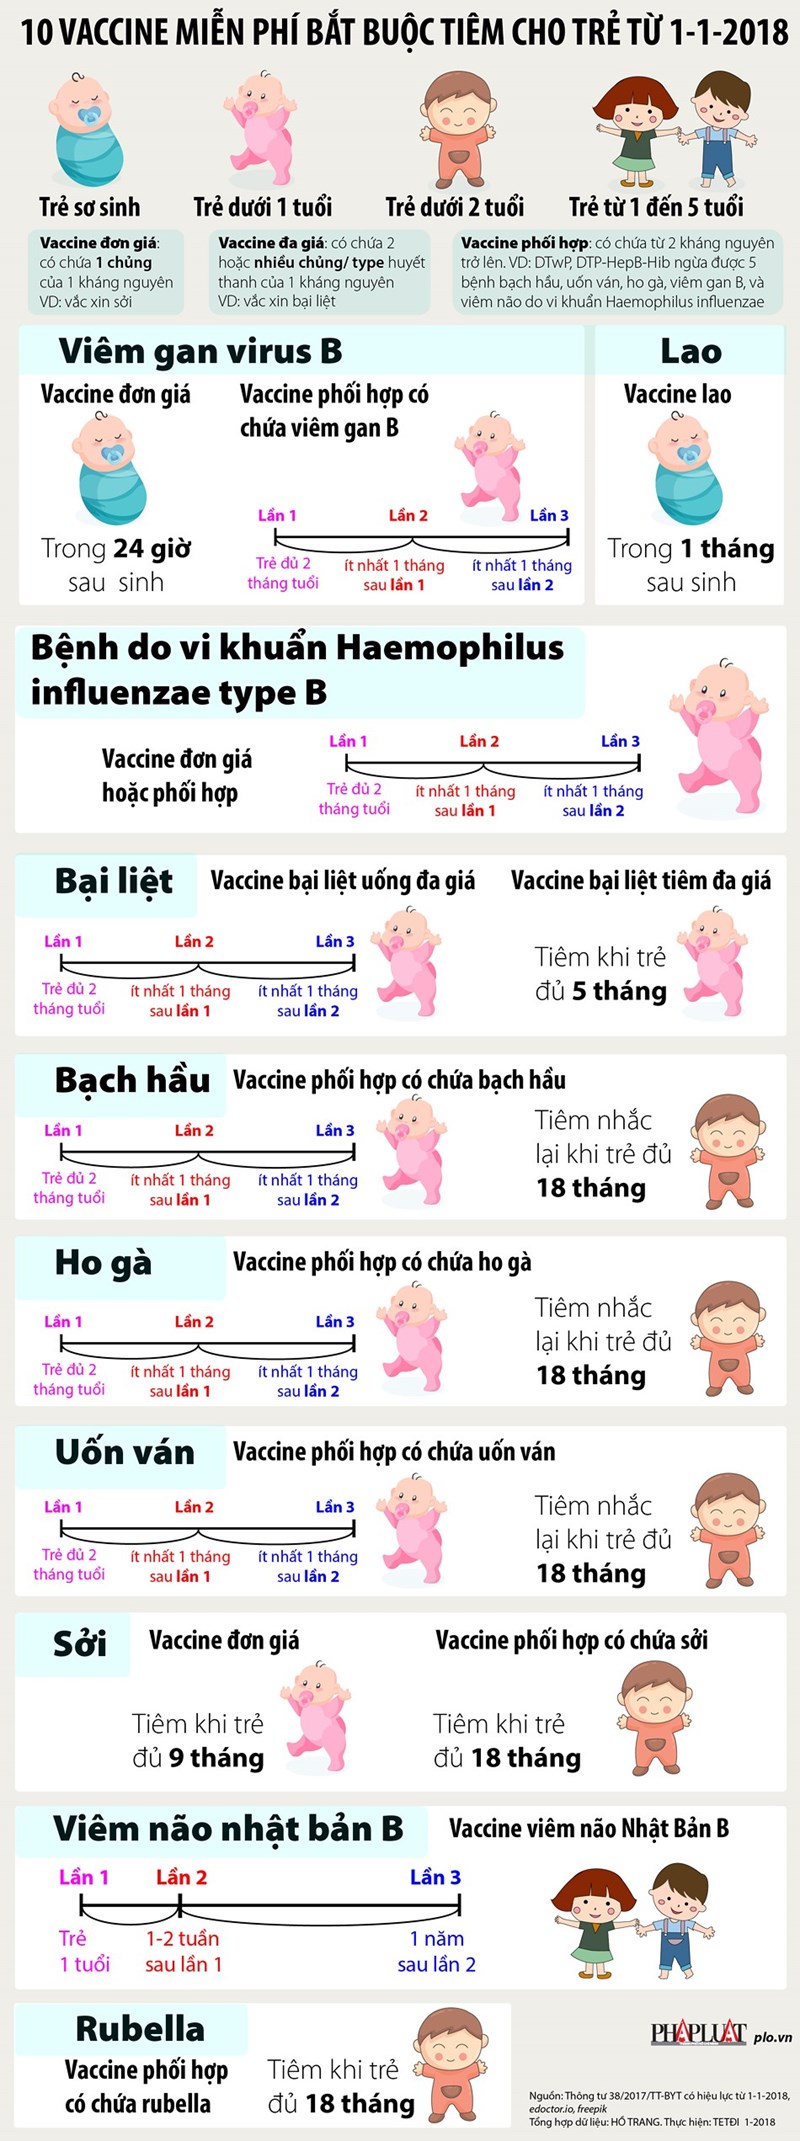 [Infographic] 10 vaccine miễn phí bắt buộc tiêm cho trẻ từ 1/1/2018 - Ảnh 1